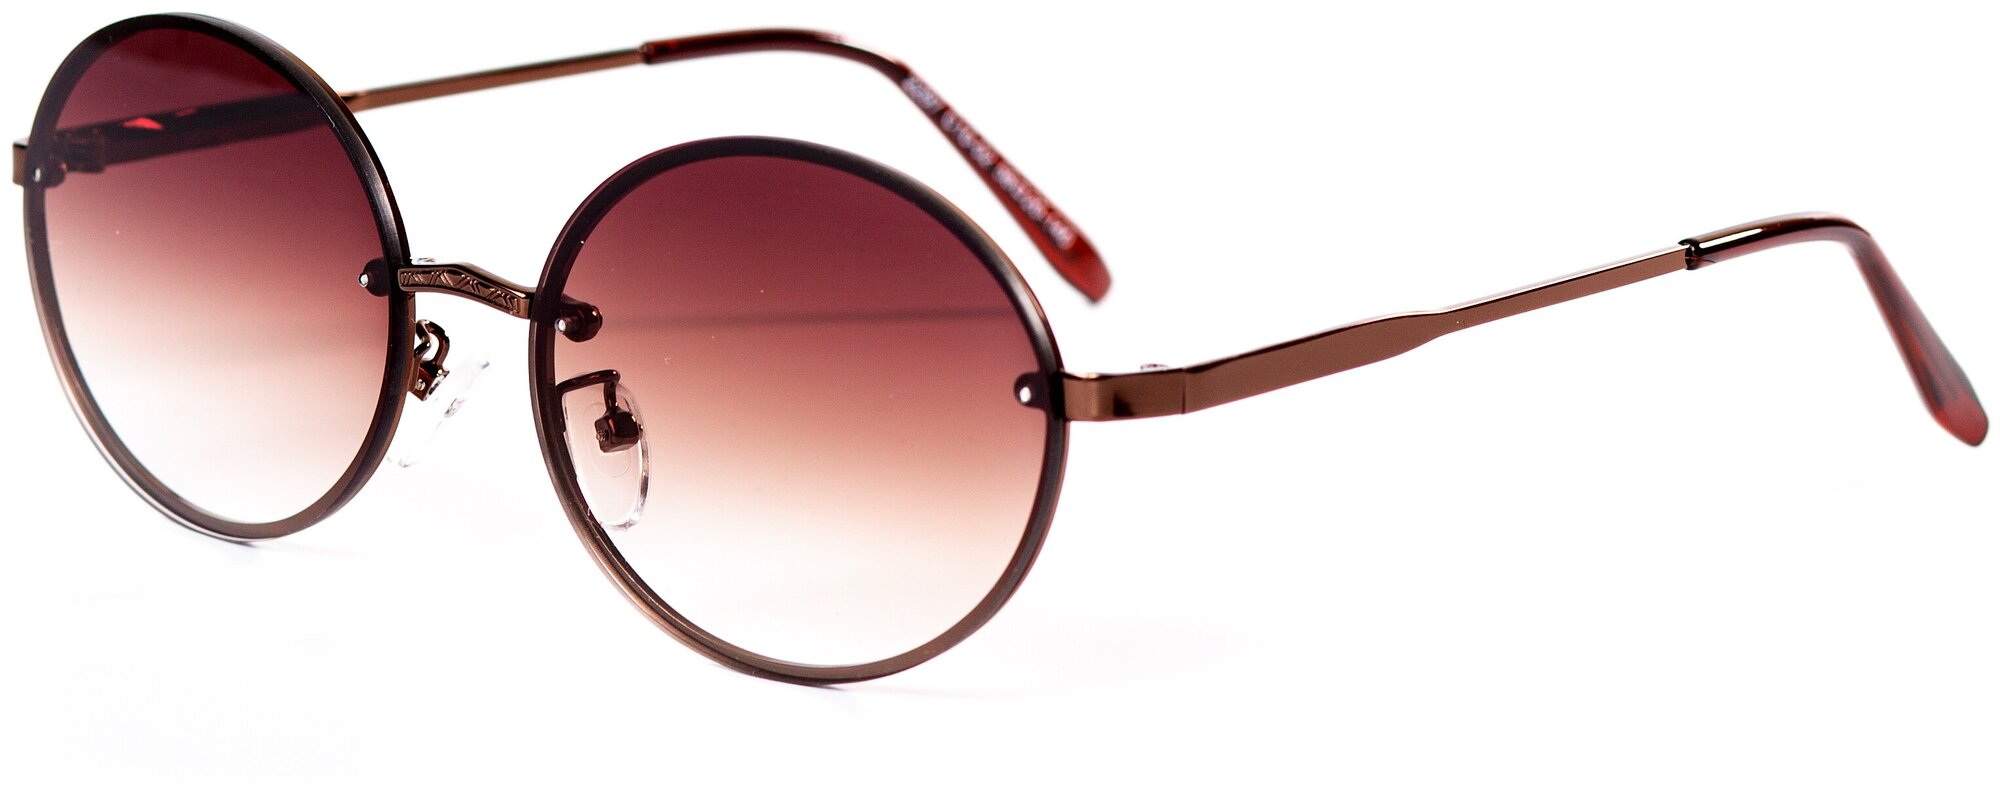 Солнцезащитные очки женские / Оправа круглая / Стильные очки / Ультрафиолетовый фильтр / Защита UV400 / Чехол в подарок/Модный аксессуар/ 280322425